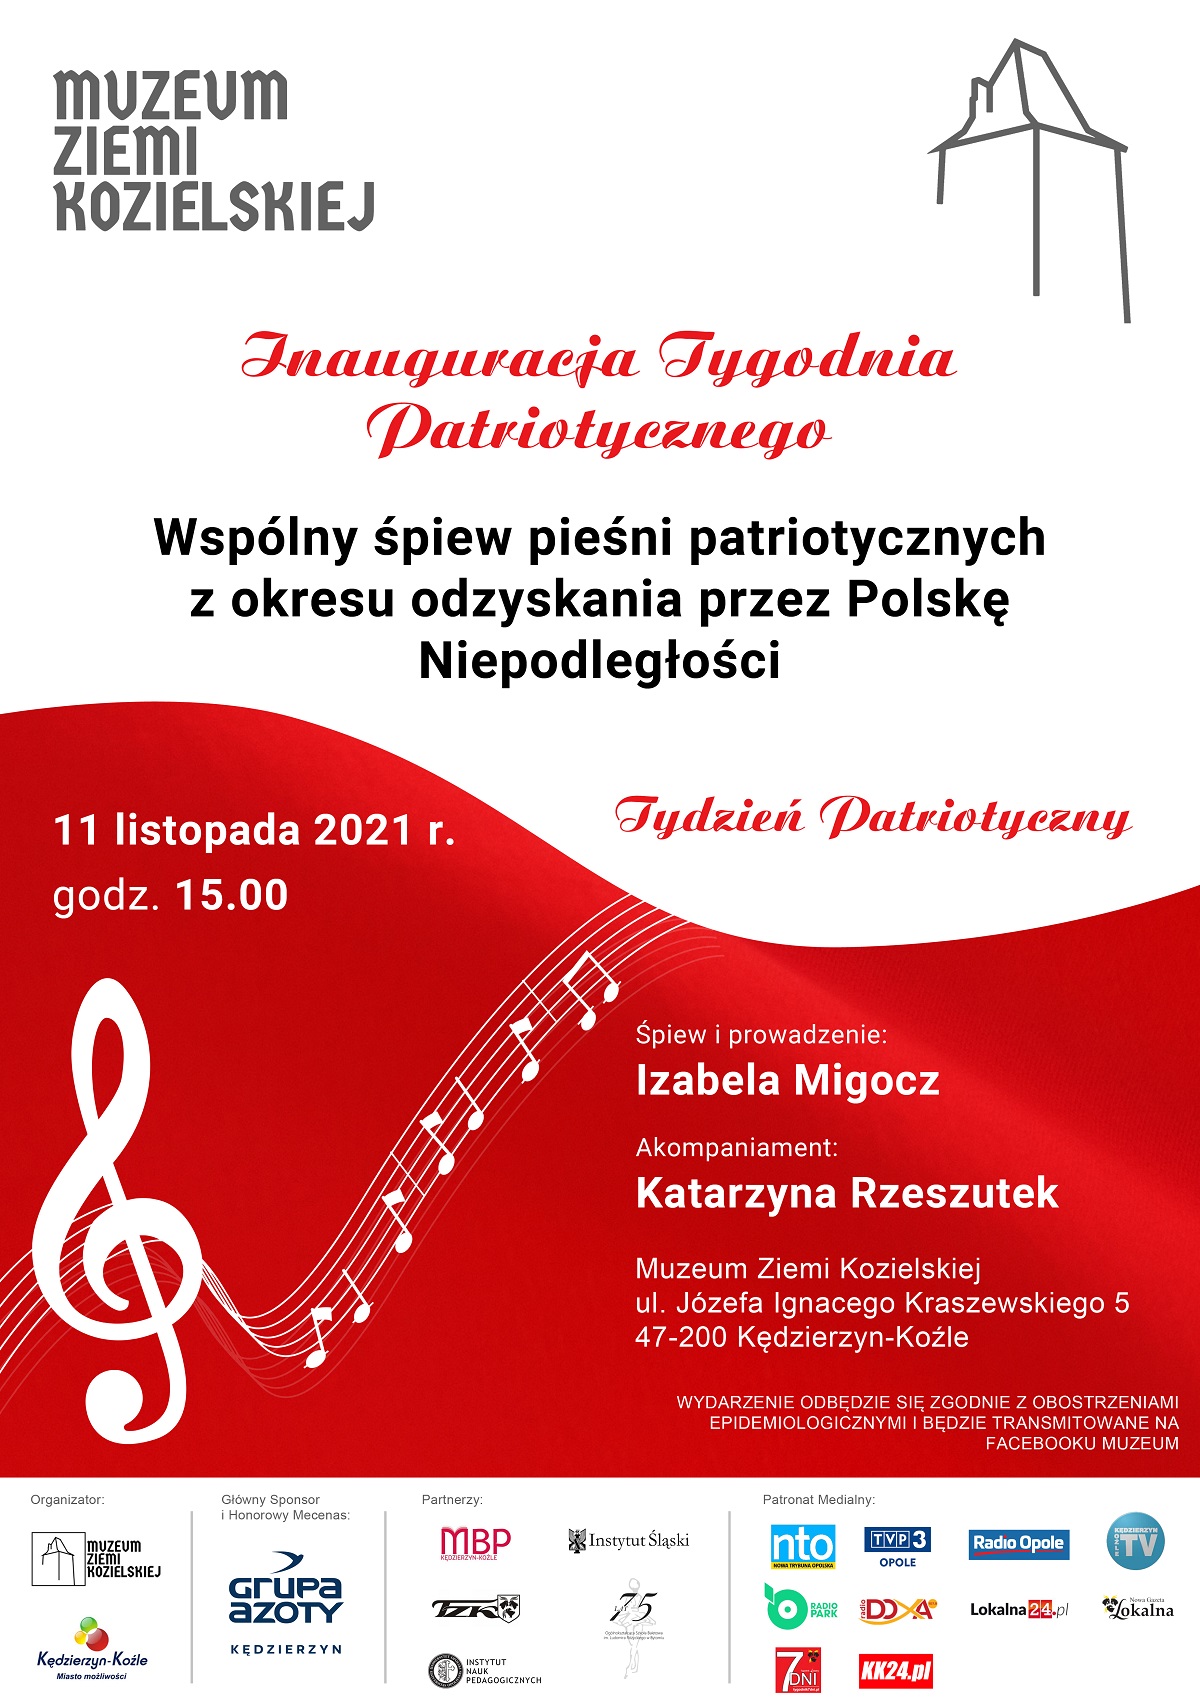 Inauguracja Tygodnia Patriotycznego w dniu 11.11.2021 r.